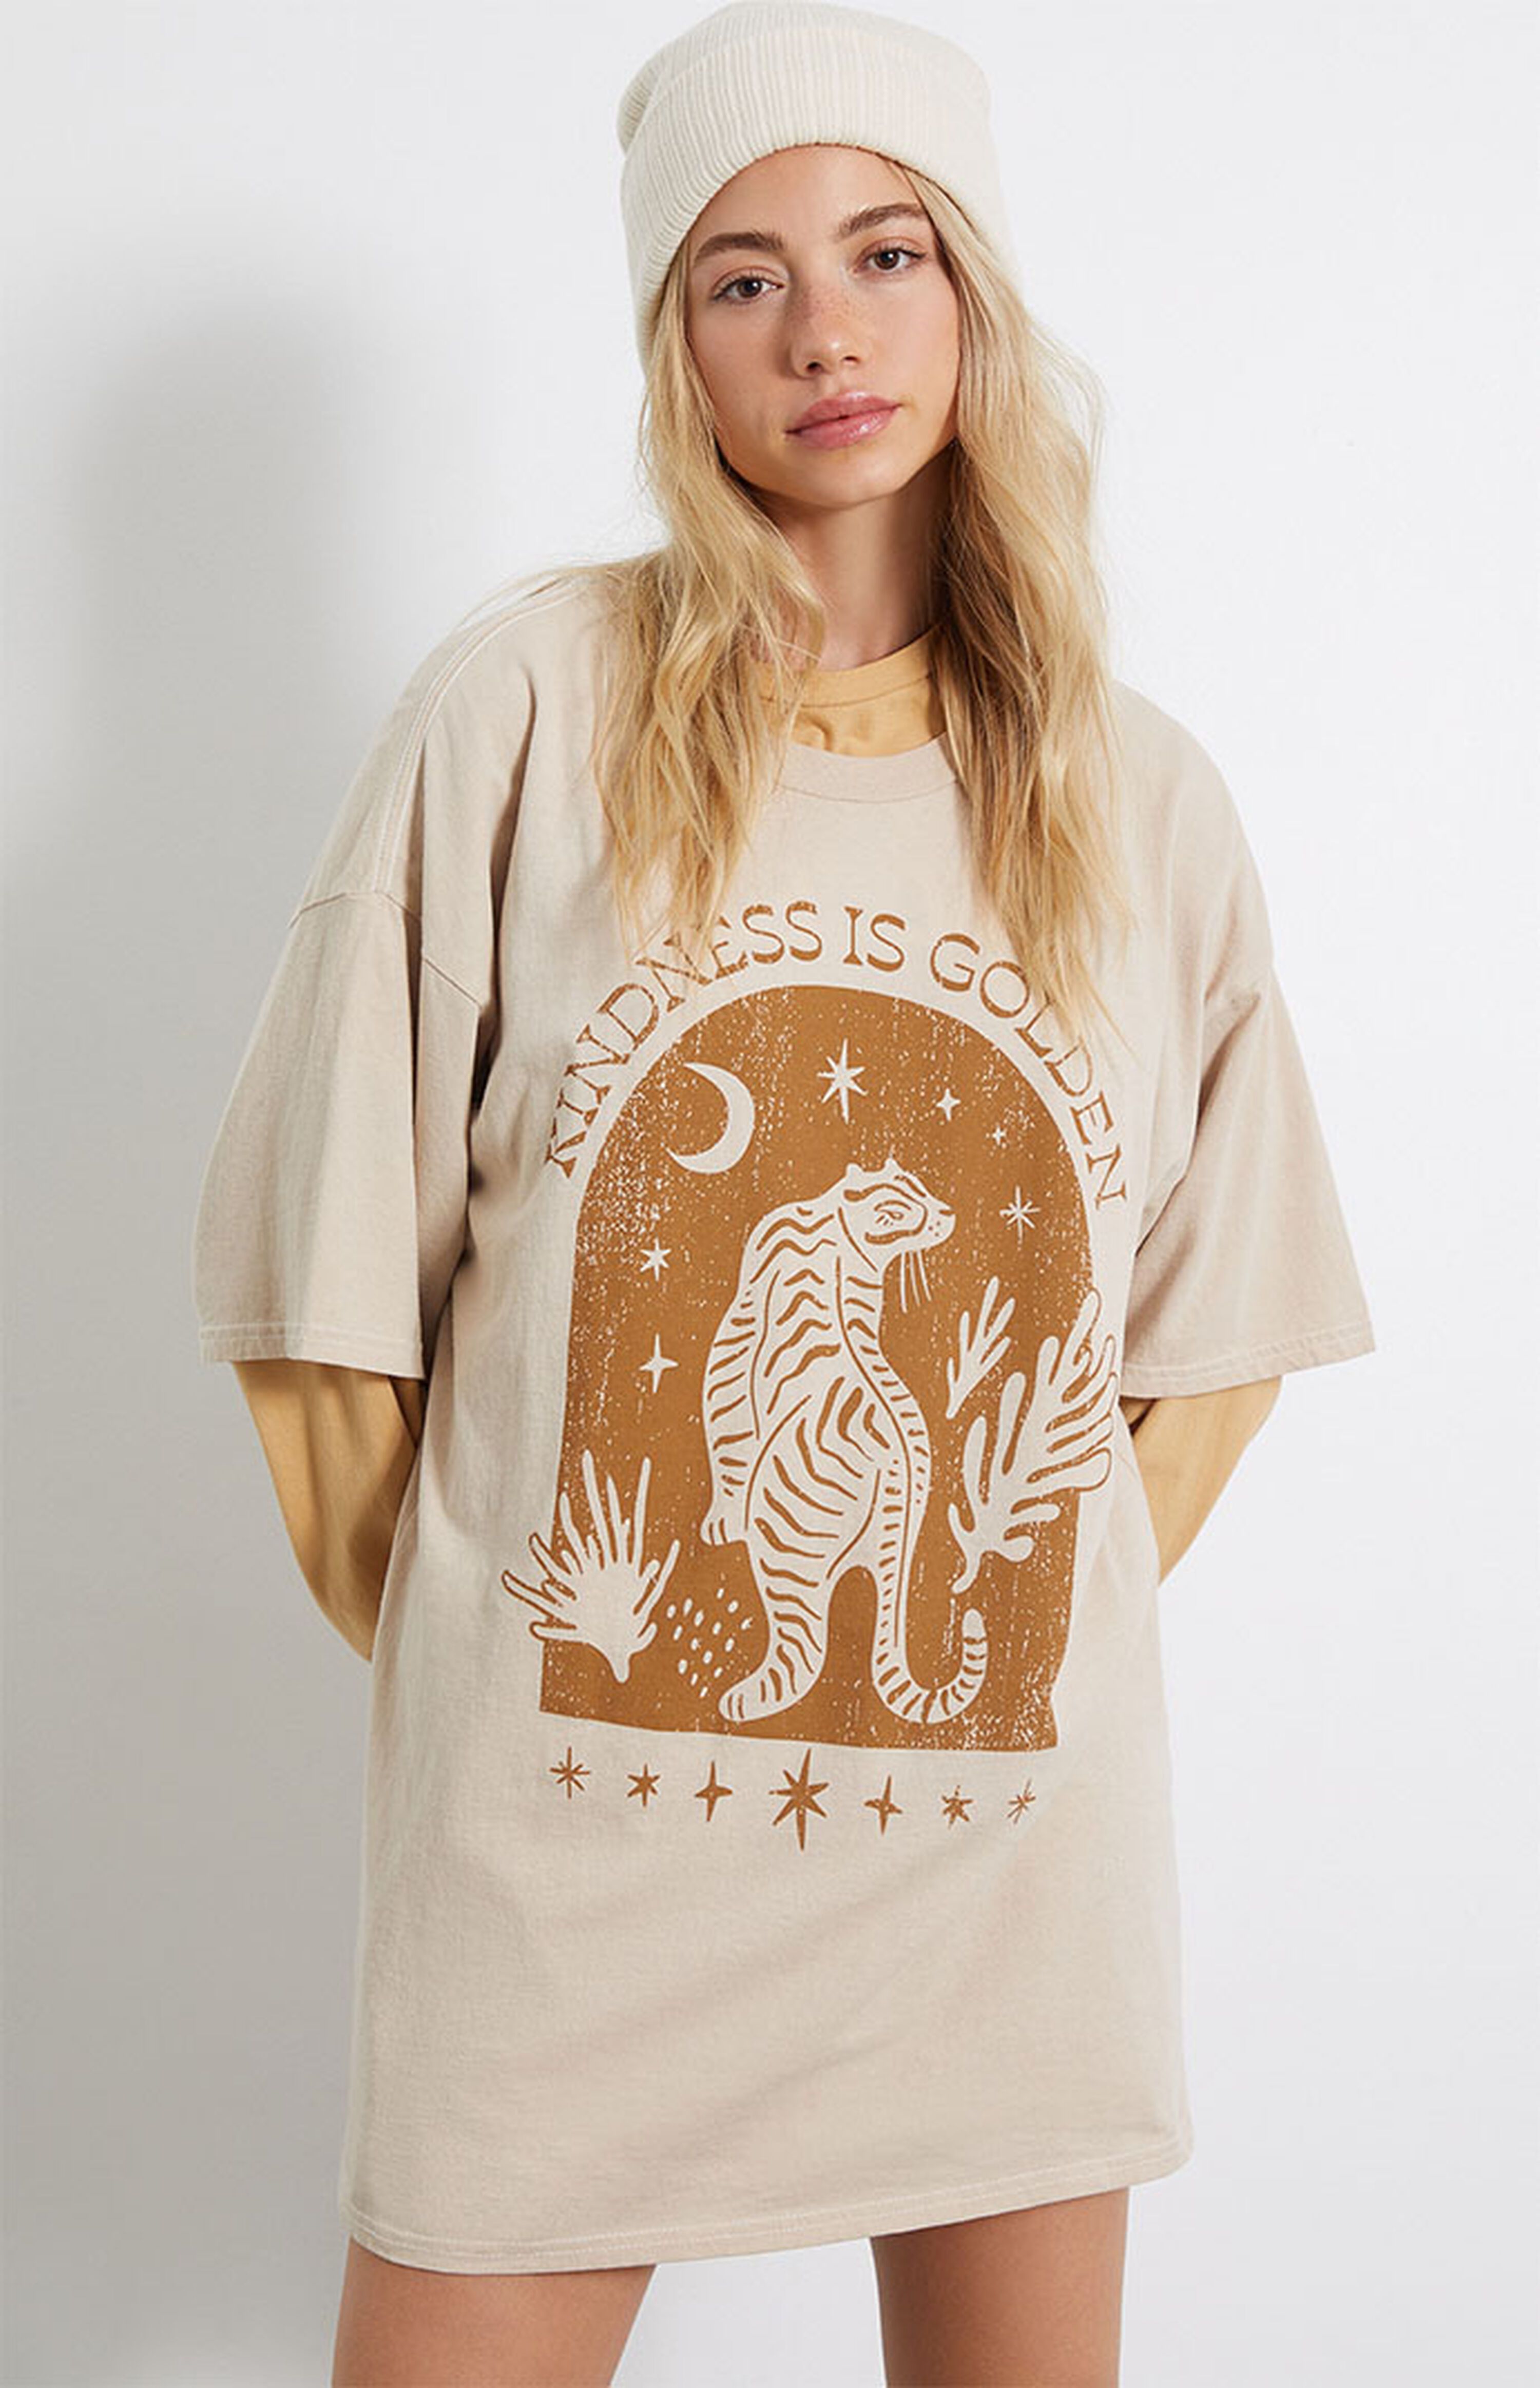 Golden Hour Kindness Tiger T-Shirt | PacSun